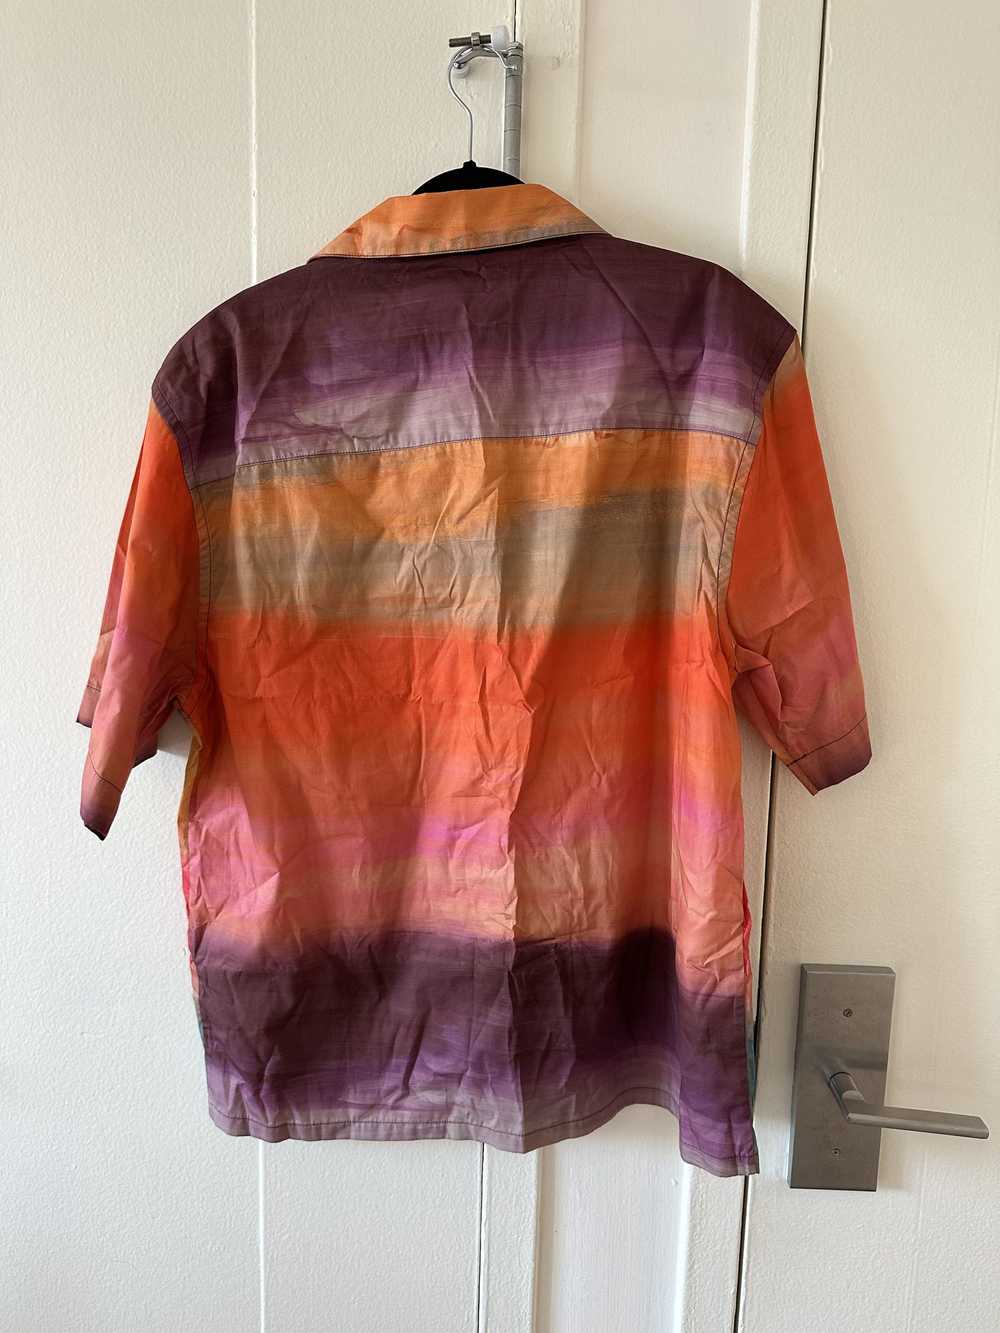 Marni Marni Striped Camp Collar Button Up Shirt - image 4